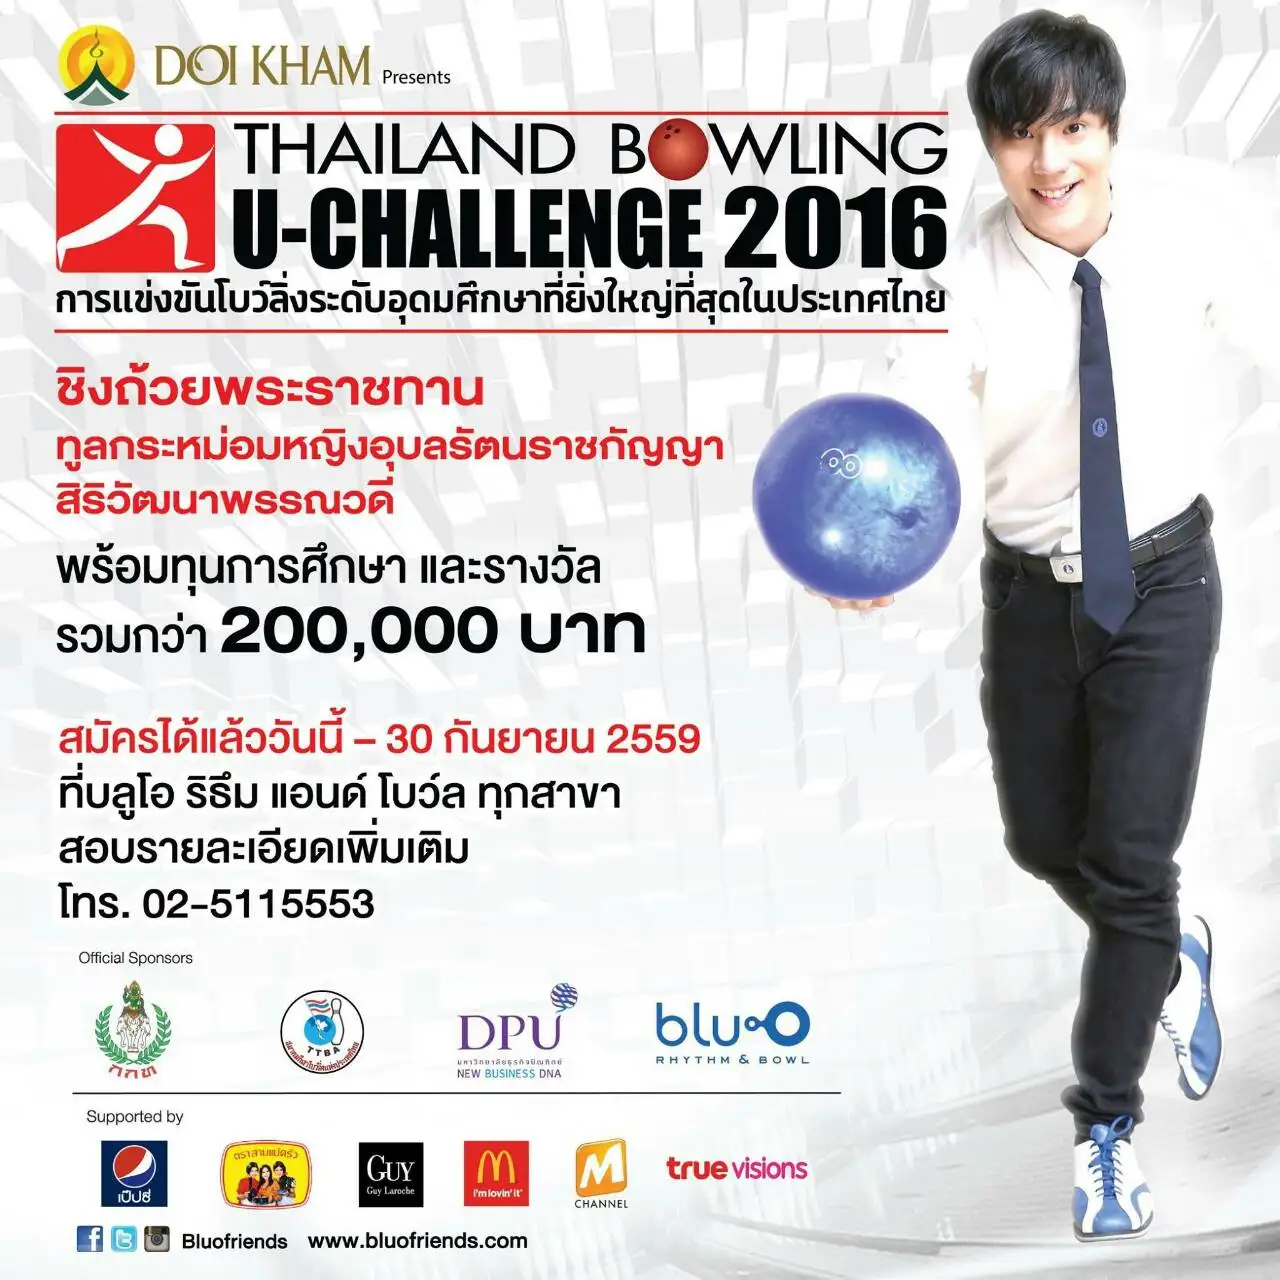 ชวนร่วมแข่งThailand Bowling U-Challenge 2016 การแข่งขันโบว์ลิ่งระดับอุดมศึกษา